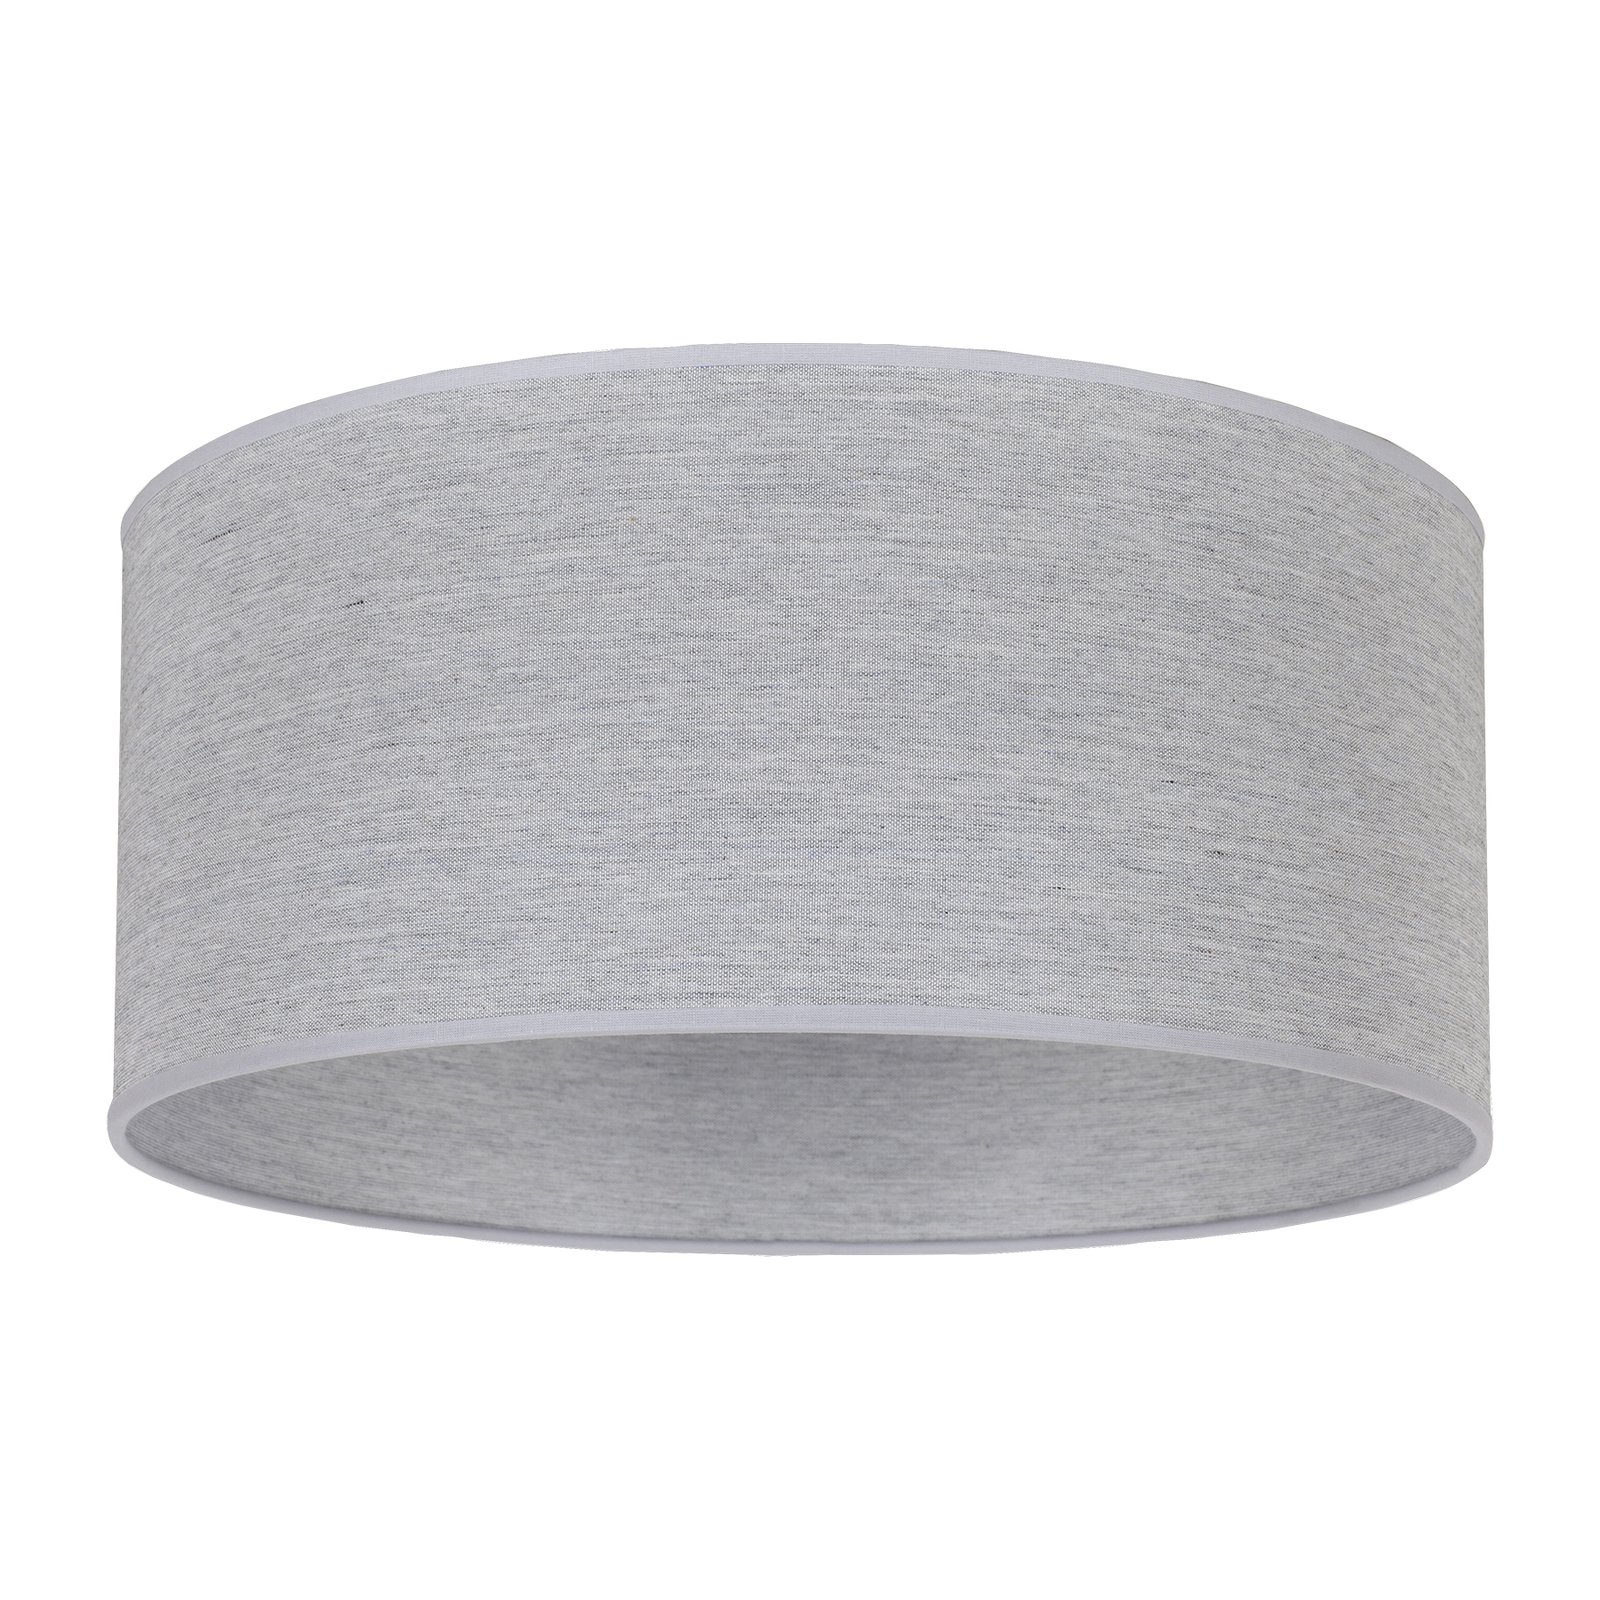 Lampskärm Roller, grå, Ø 50 cm, höjd 24 cm